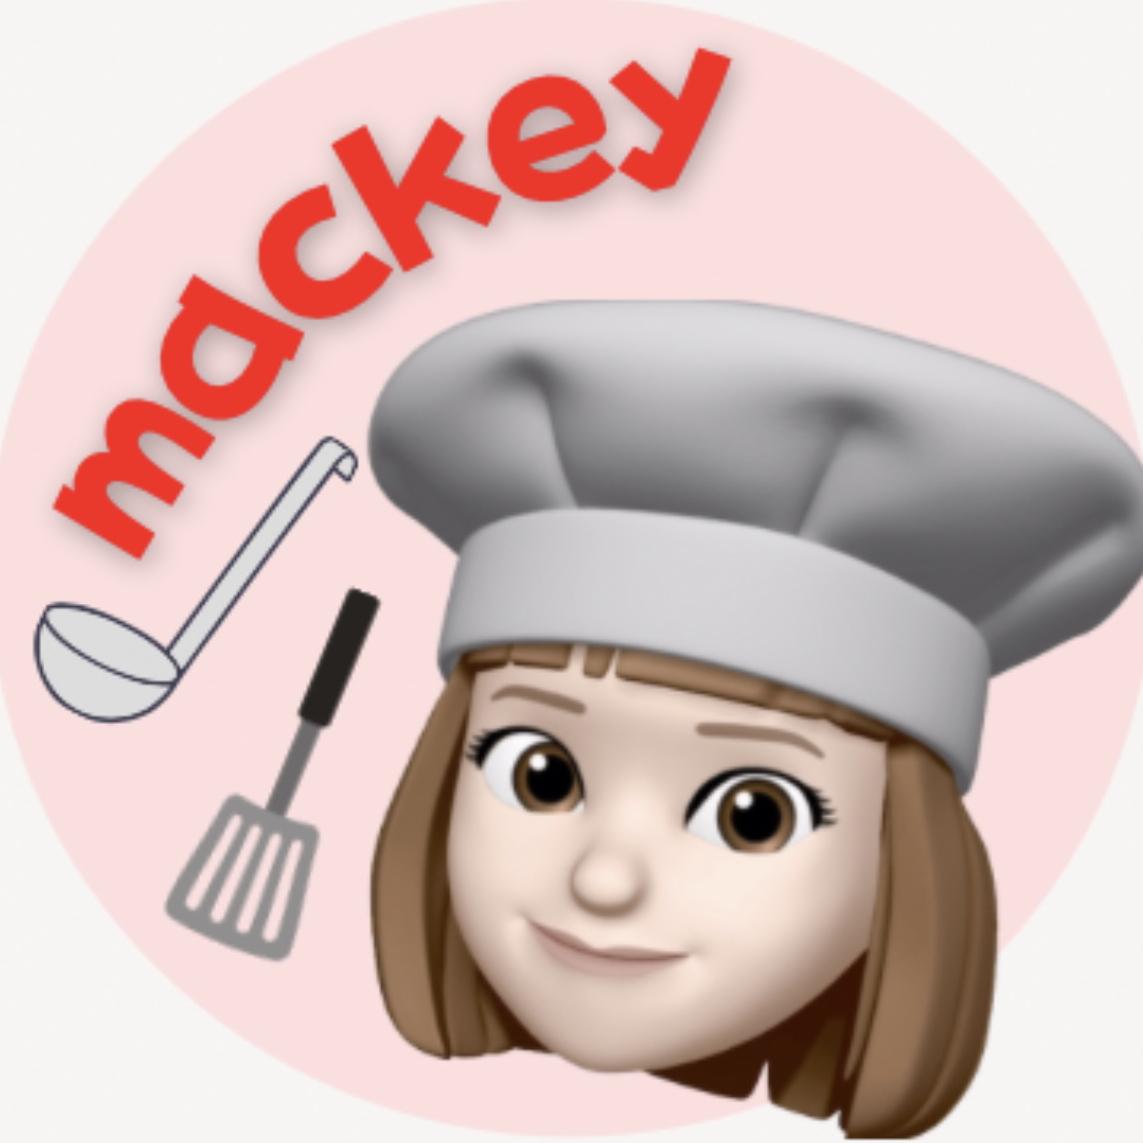 mackey_diet